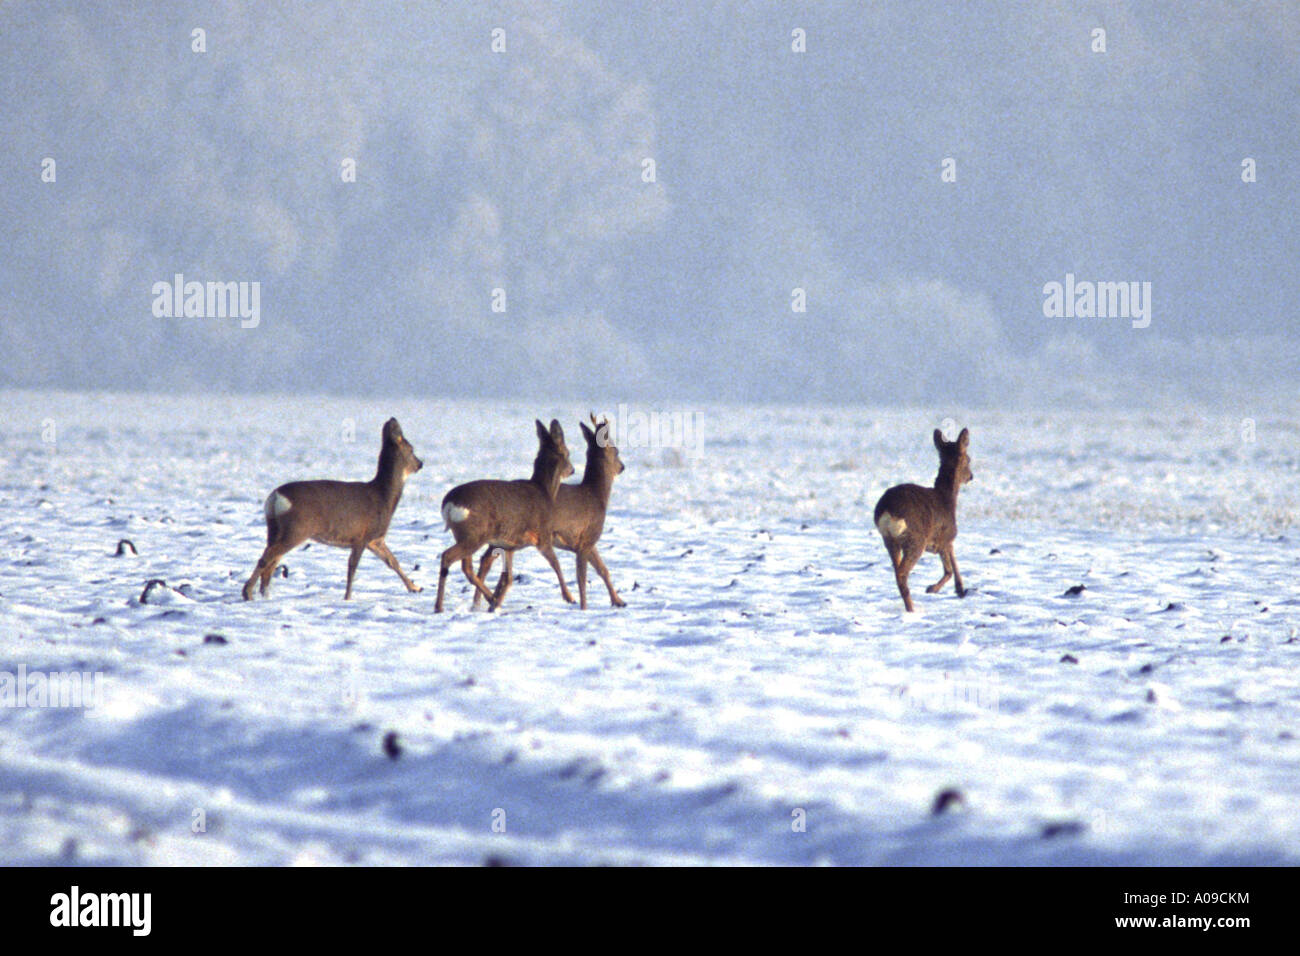 roe deer (Capreolus capreolus), group on field, in winter Stock Photo